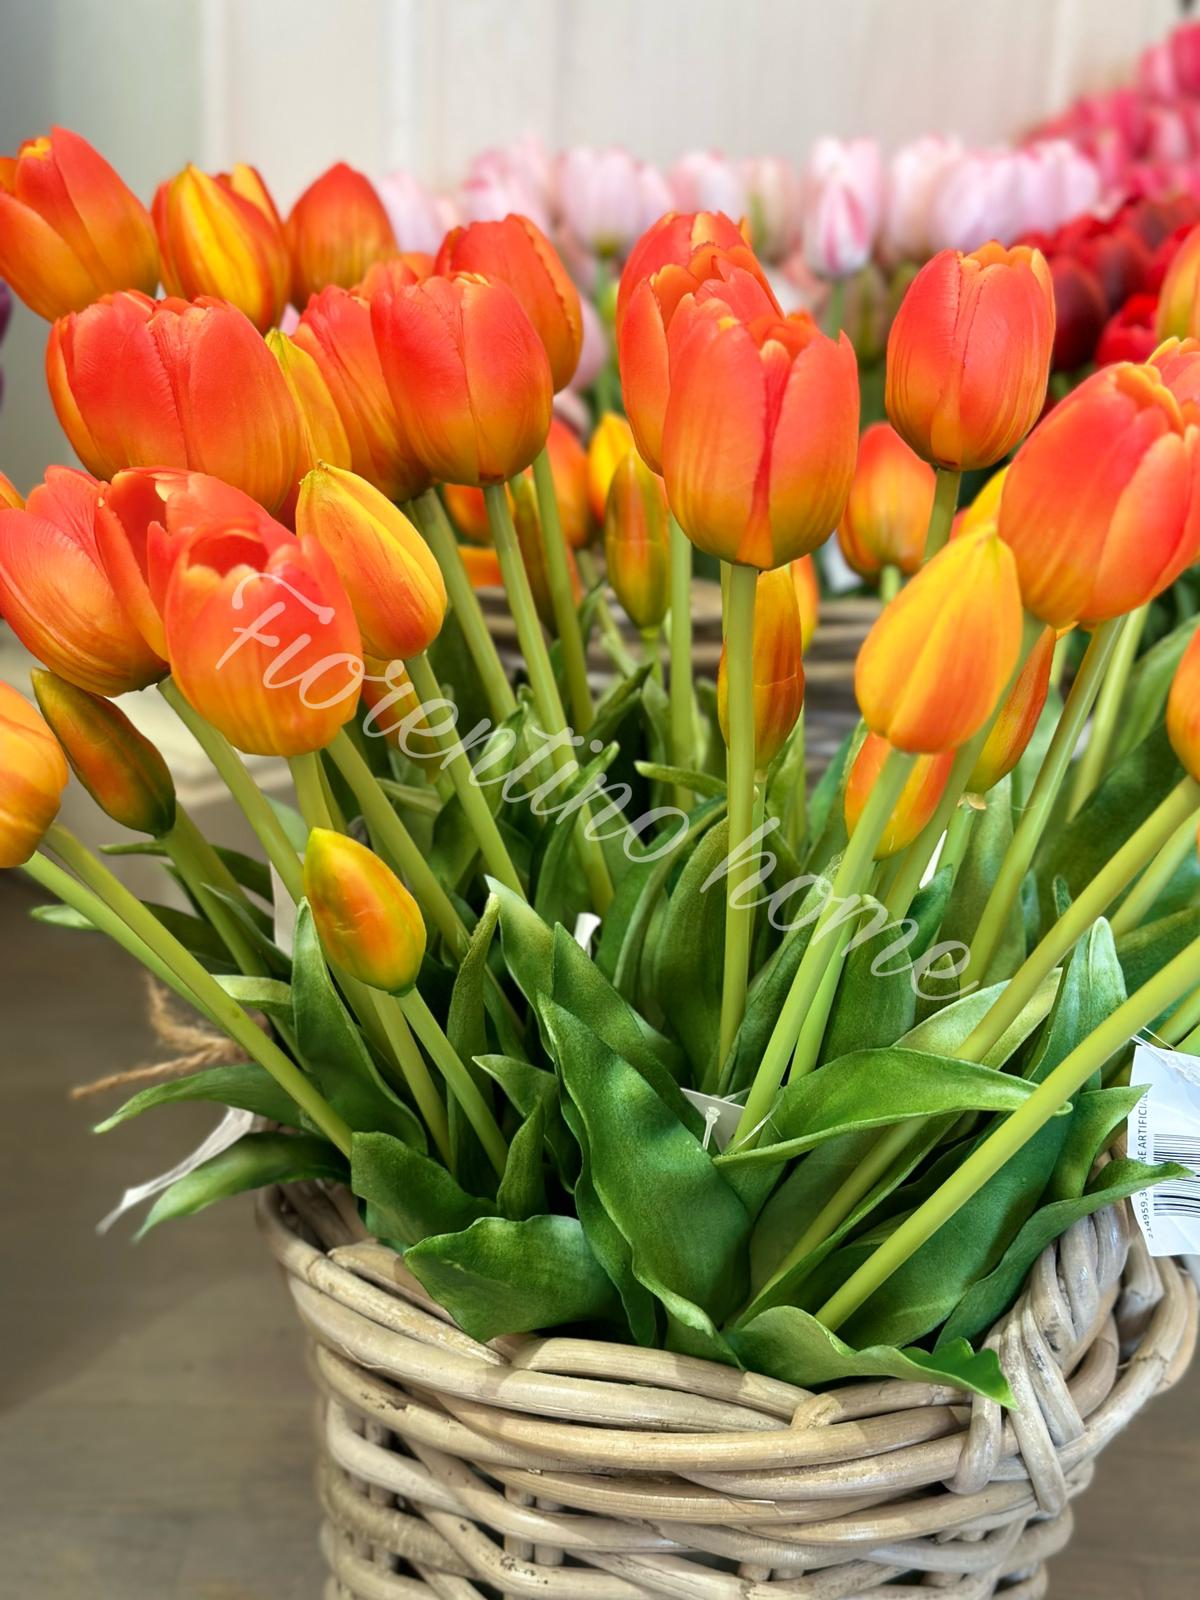 Bouquet di cinque tulipani artificiali sfumato arancio - Edg